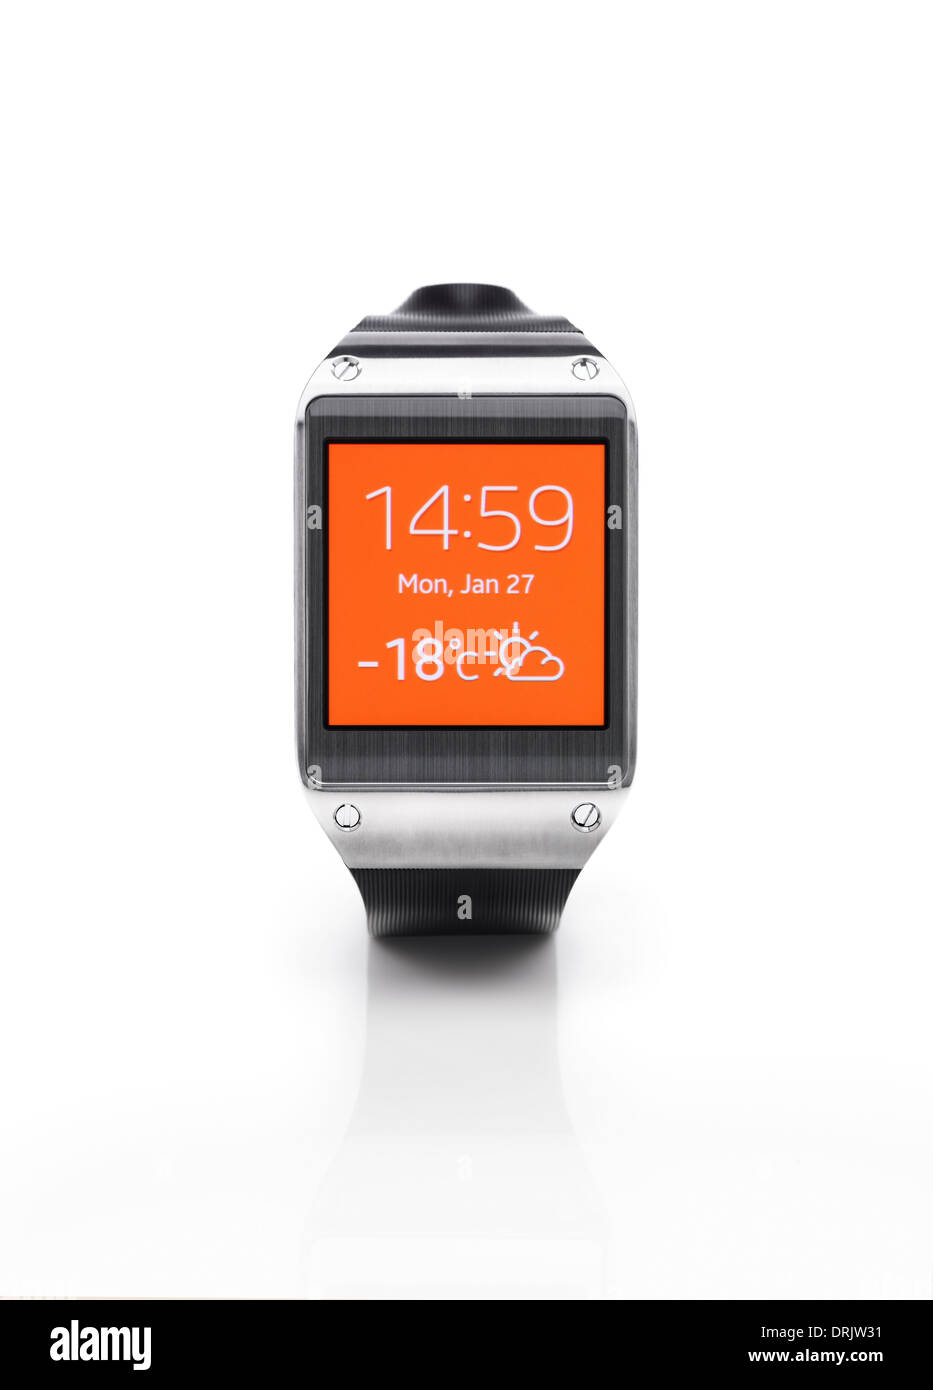 Galaxy Gear Smartwatch là một trong những thiết bị đồng hồ thông minh hàng đầu hiện nay! Với nhiều tính năng tiêu chuẩn như theo dõi sức khỏe, chuẩn đoán bệnh tật, thông báo tin nhắn đến cuộc gọi...bạn sẽ yên tâm rằng đồng hồ của mình sẽ không bao giờ chậm trễ. Hãy xem thêm chi tiết về sản phẩm này để mua ngay!